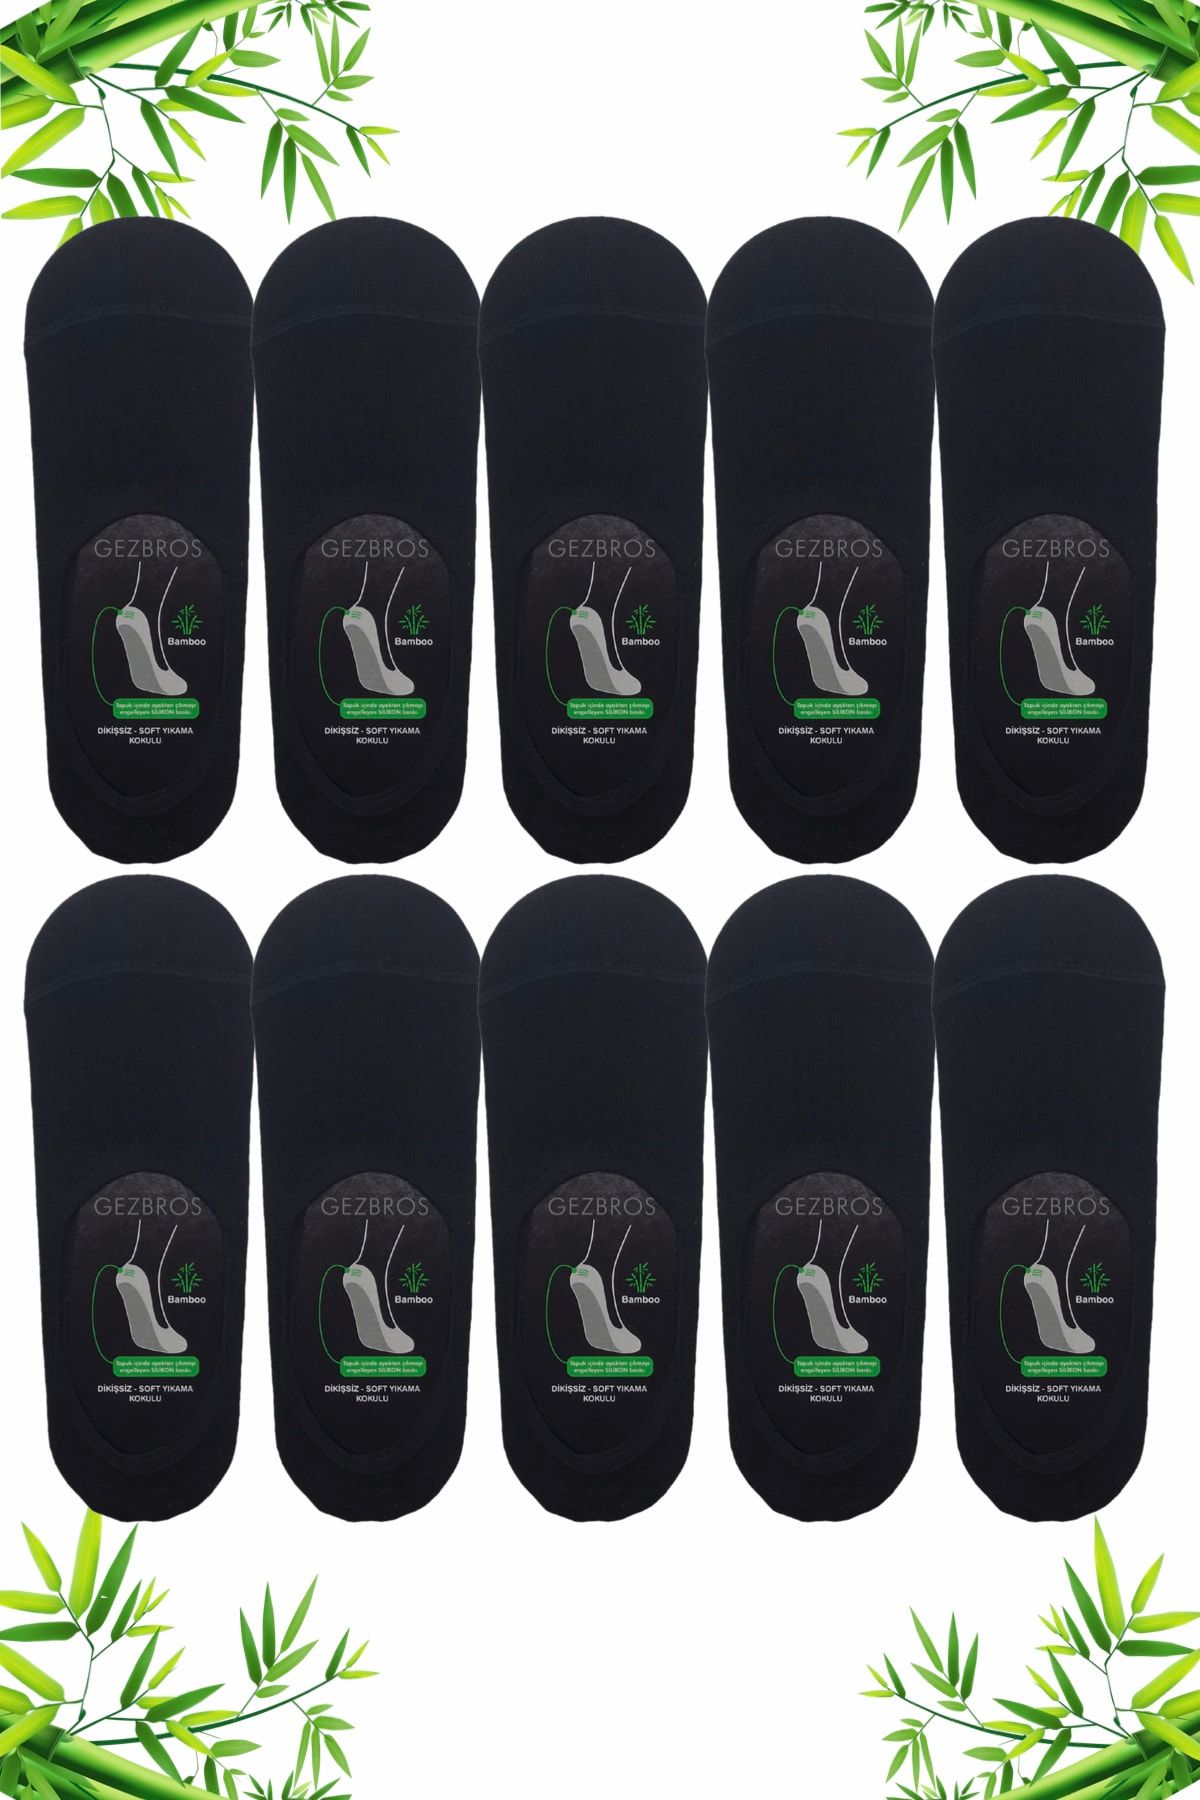 GezBros 10 Çift Siyah Renk Bambu Silikonlu Erkek Babet Çorap